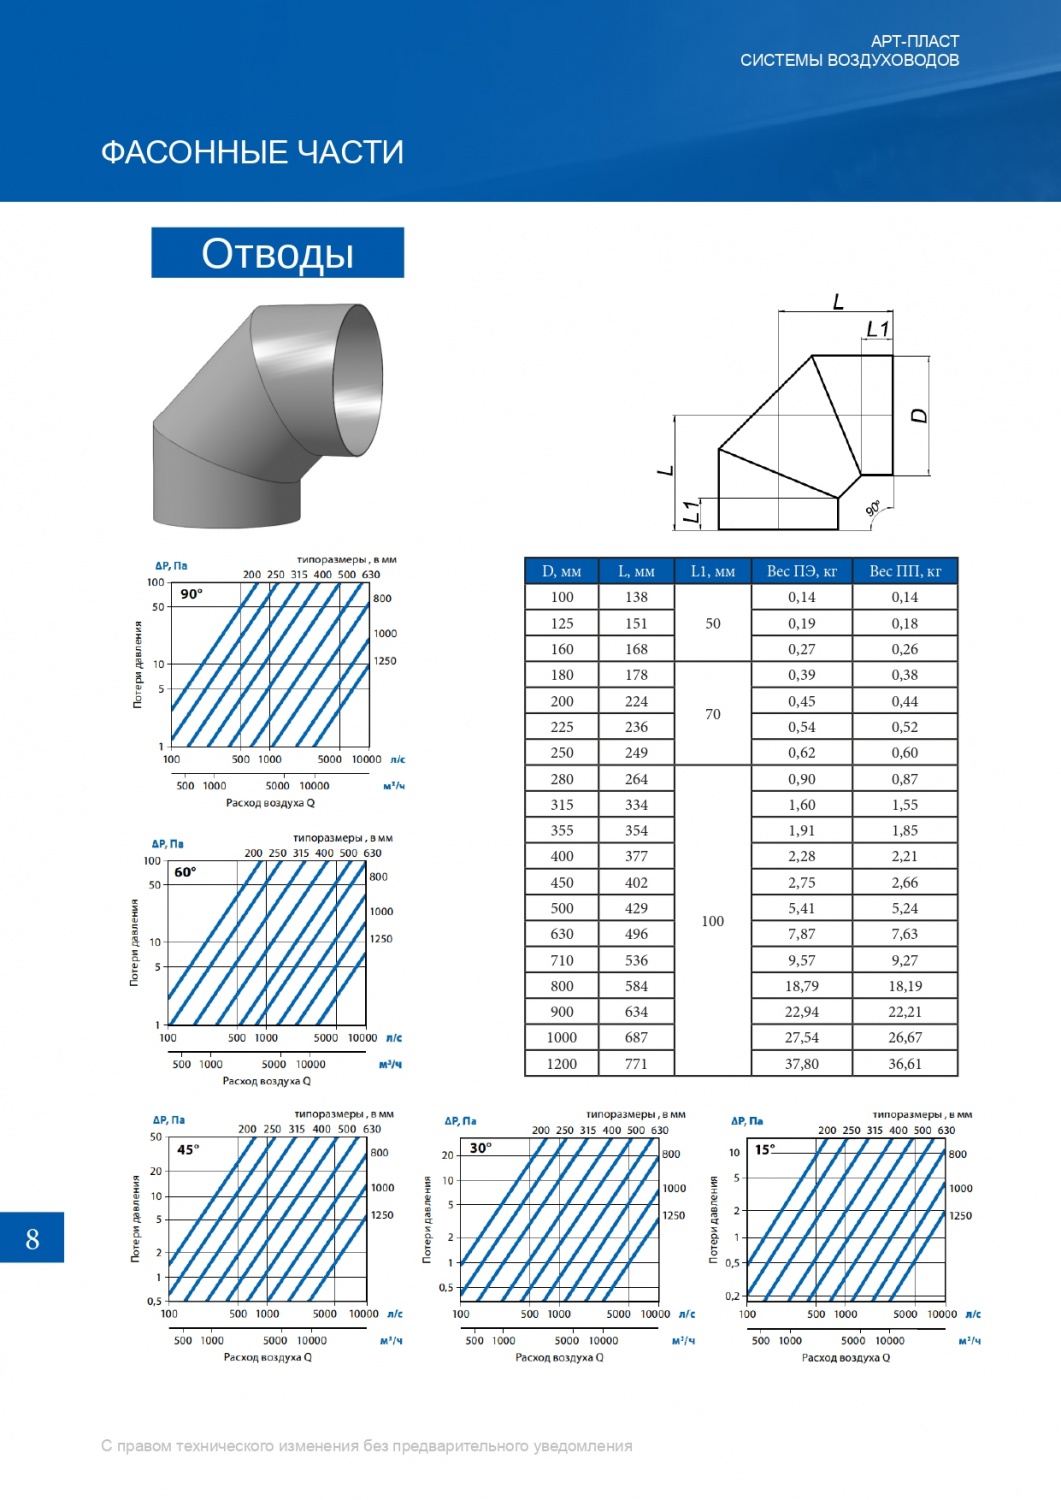 Расчёт площади воздуховодов и фасонных конструкций: как правильно спроектировать конструкцию и рассчитать показатели